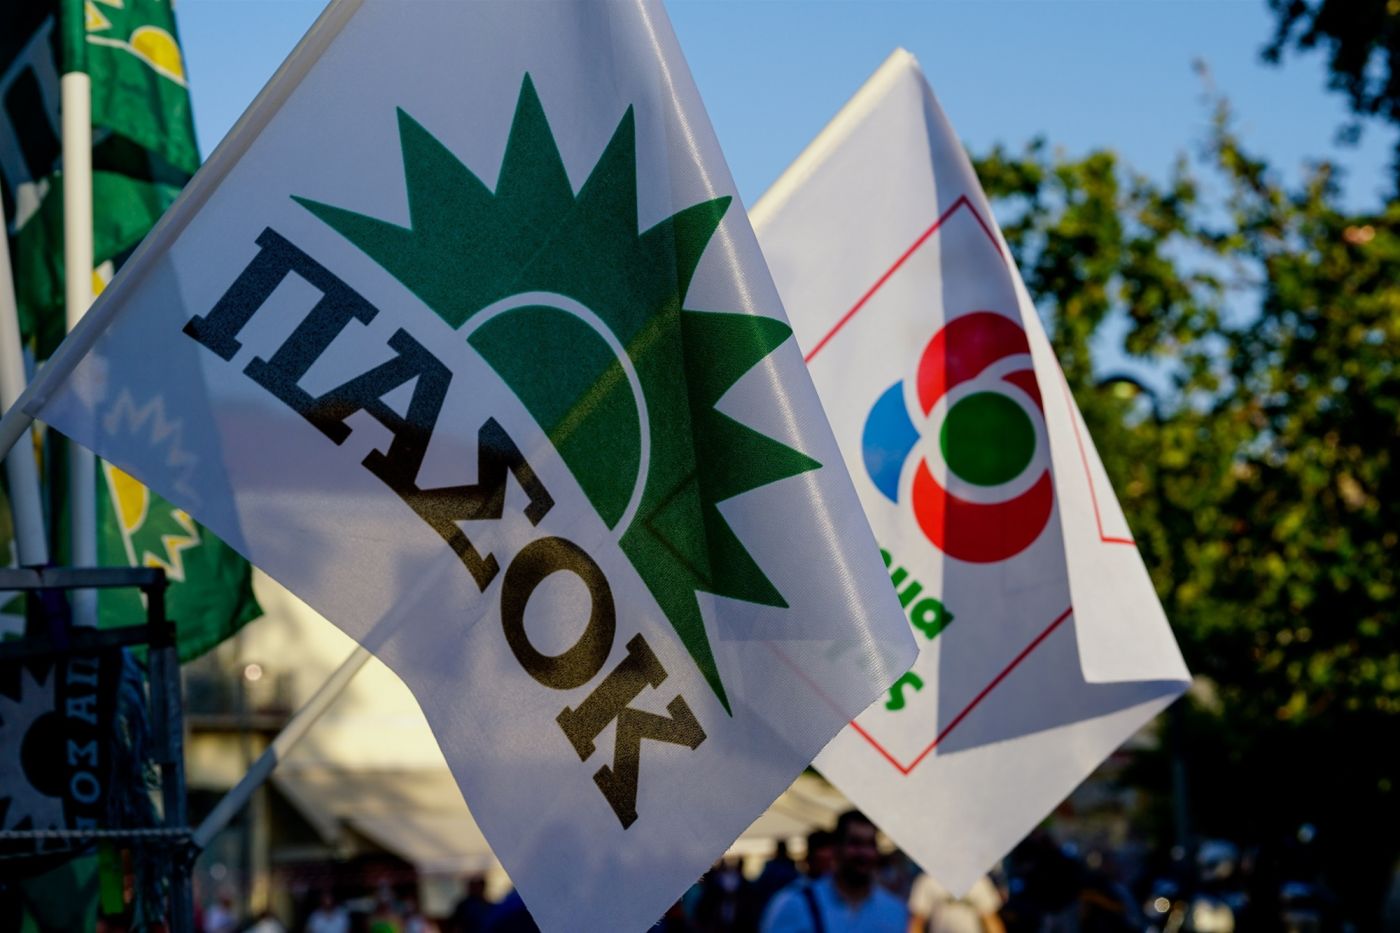 ΚΙΝΑΛ: «Κίνημα Αλλαγής» ή «ΠΑΣΟΚ – Κίνημα Αλλαγής» οι δυο επιλογές για το όνομα του κόμματος